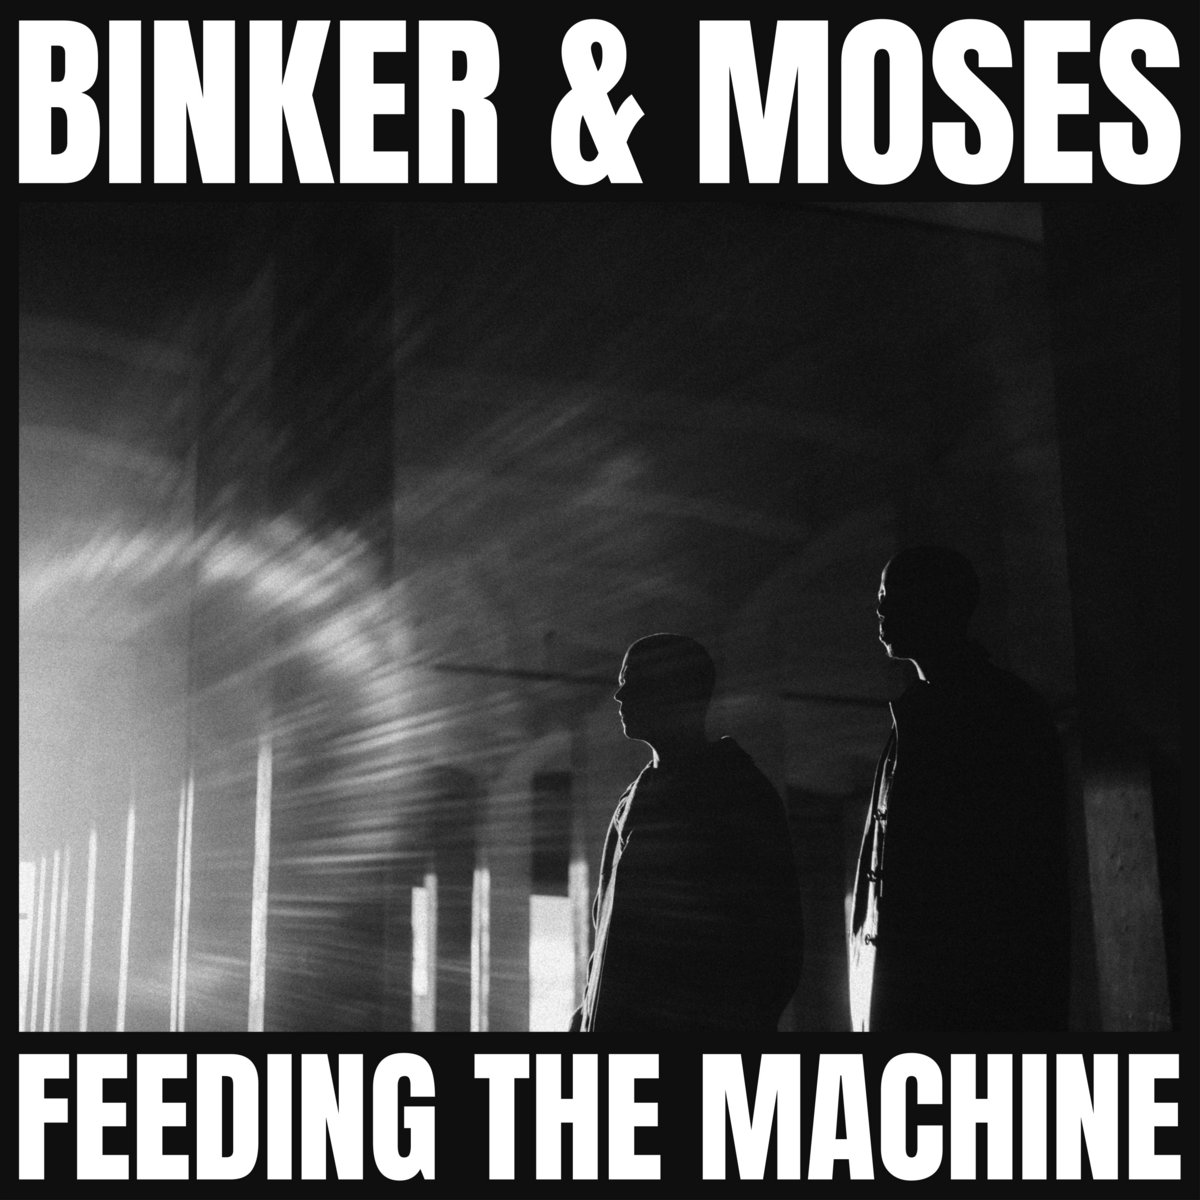 Binker and Moses